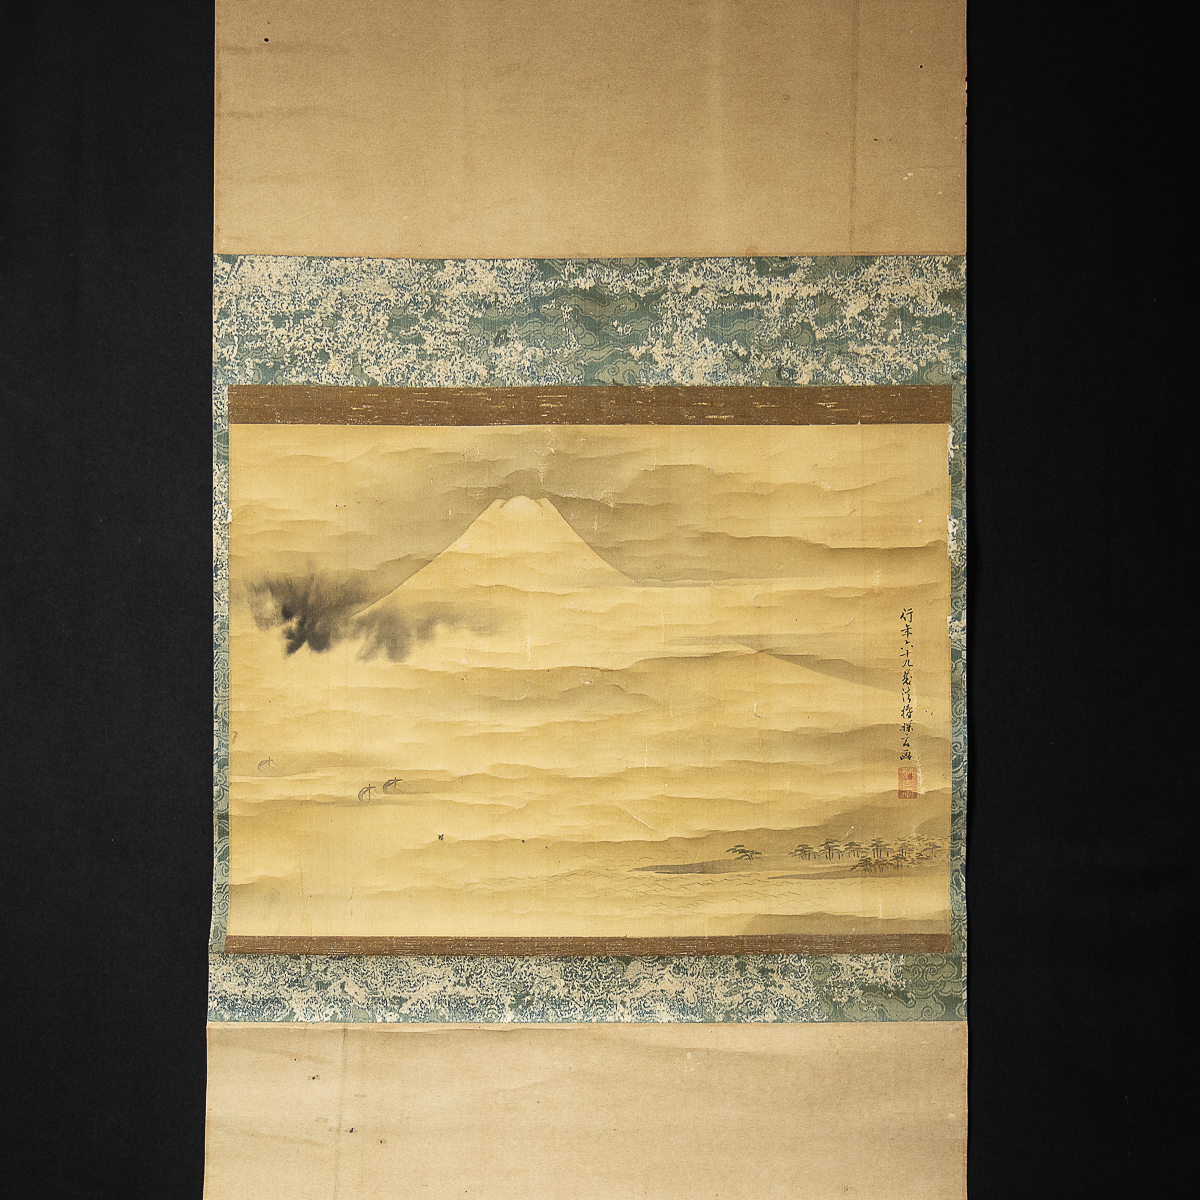 724 [نسخة] كانو تانجين في جبل فوجي عمل في سن 69 رسامًا لحكومة توكوغاوا الشوغونية نشط خلال فترة بونكا بونساي, تلوين, اللوحة اليابانية, منظر جمالي, فوجيتسو